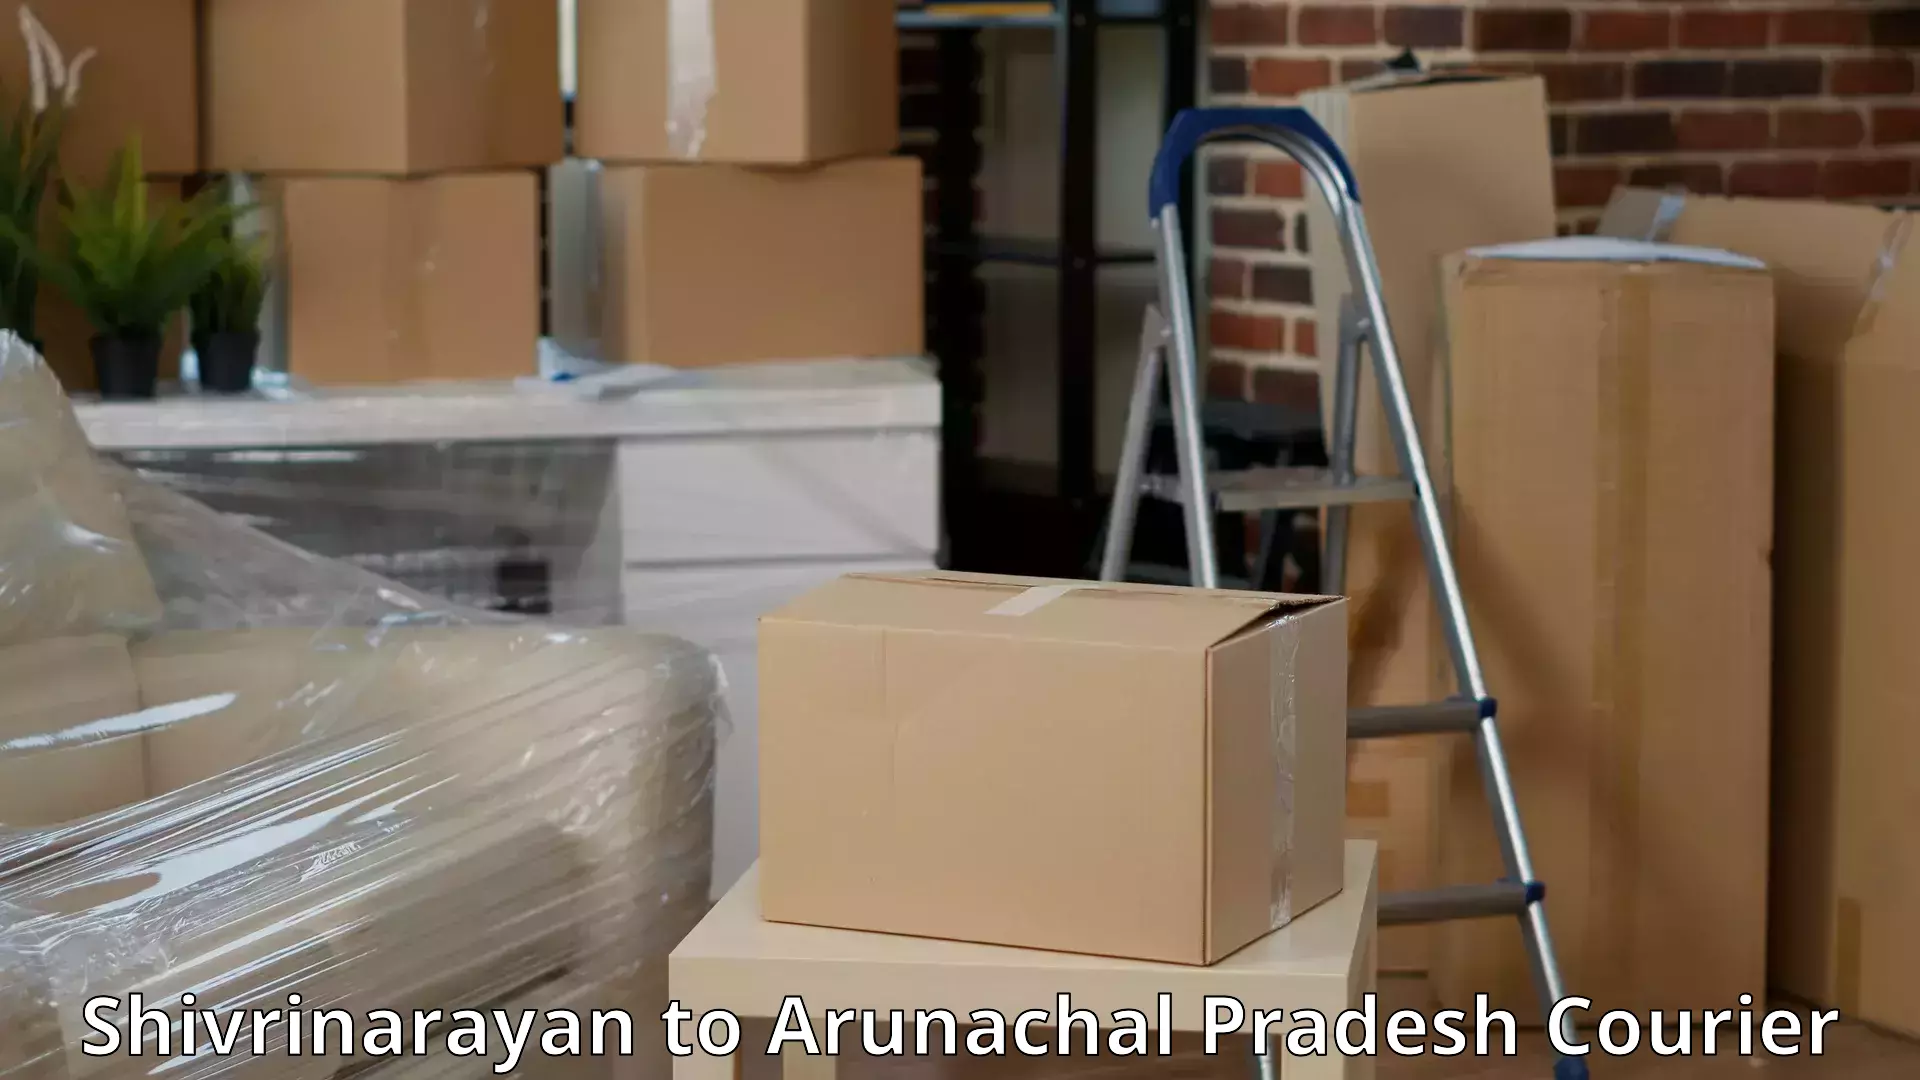 Moving and packing experts Shivrinarayan to Basar